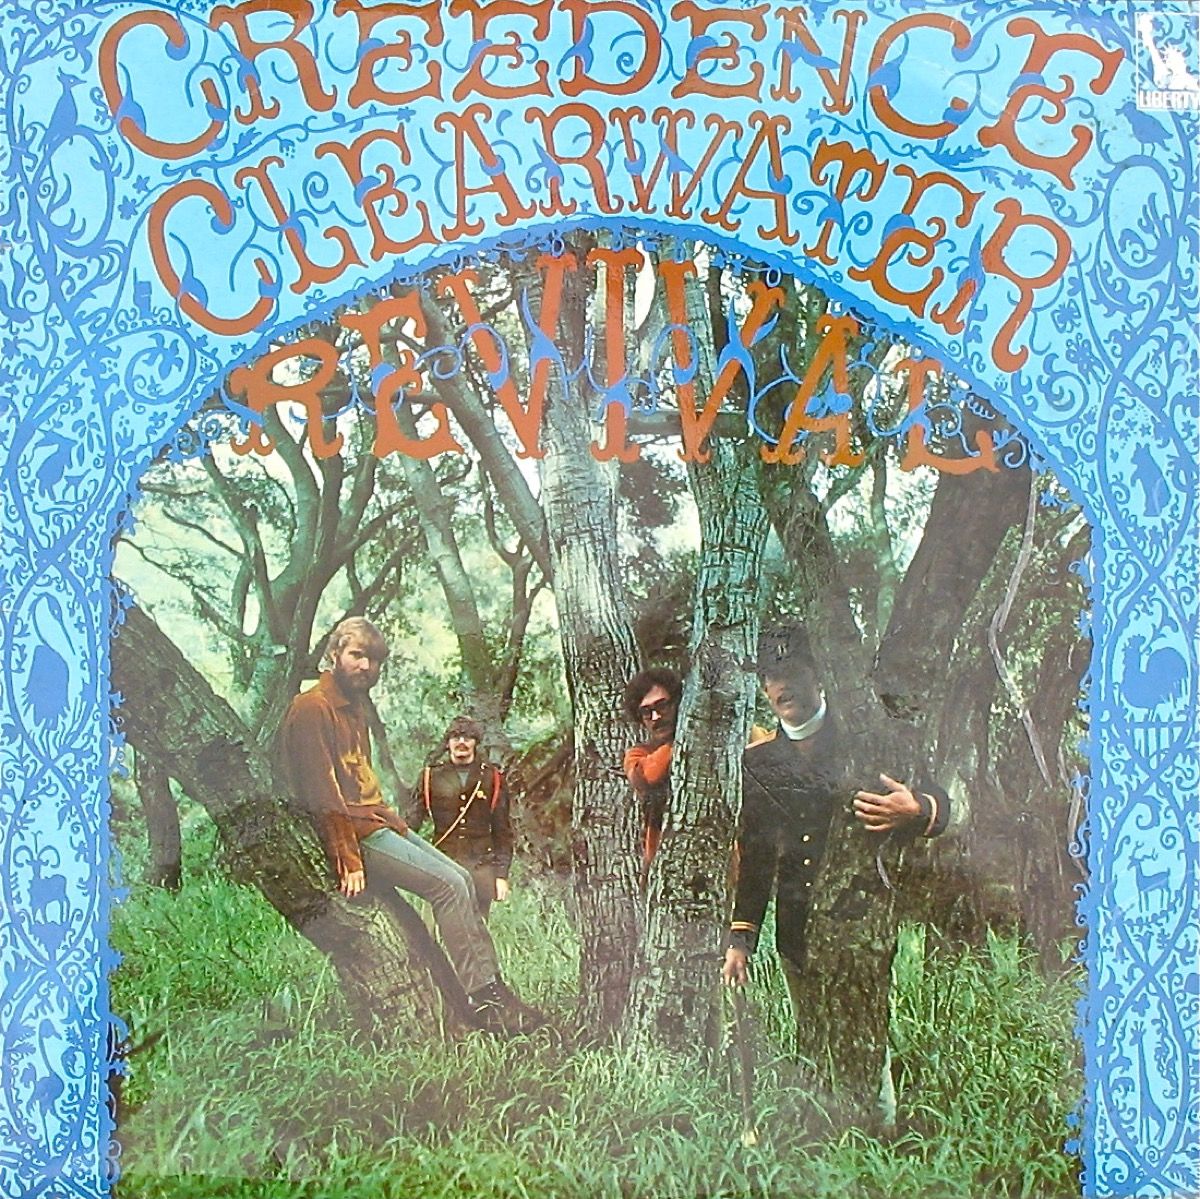 Creedence Clearwater Revival debüütalbumi kaas